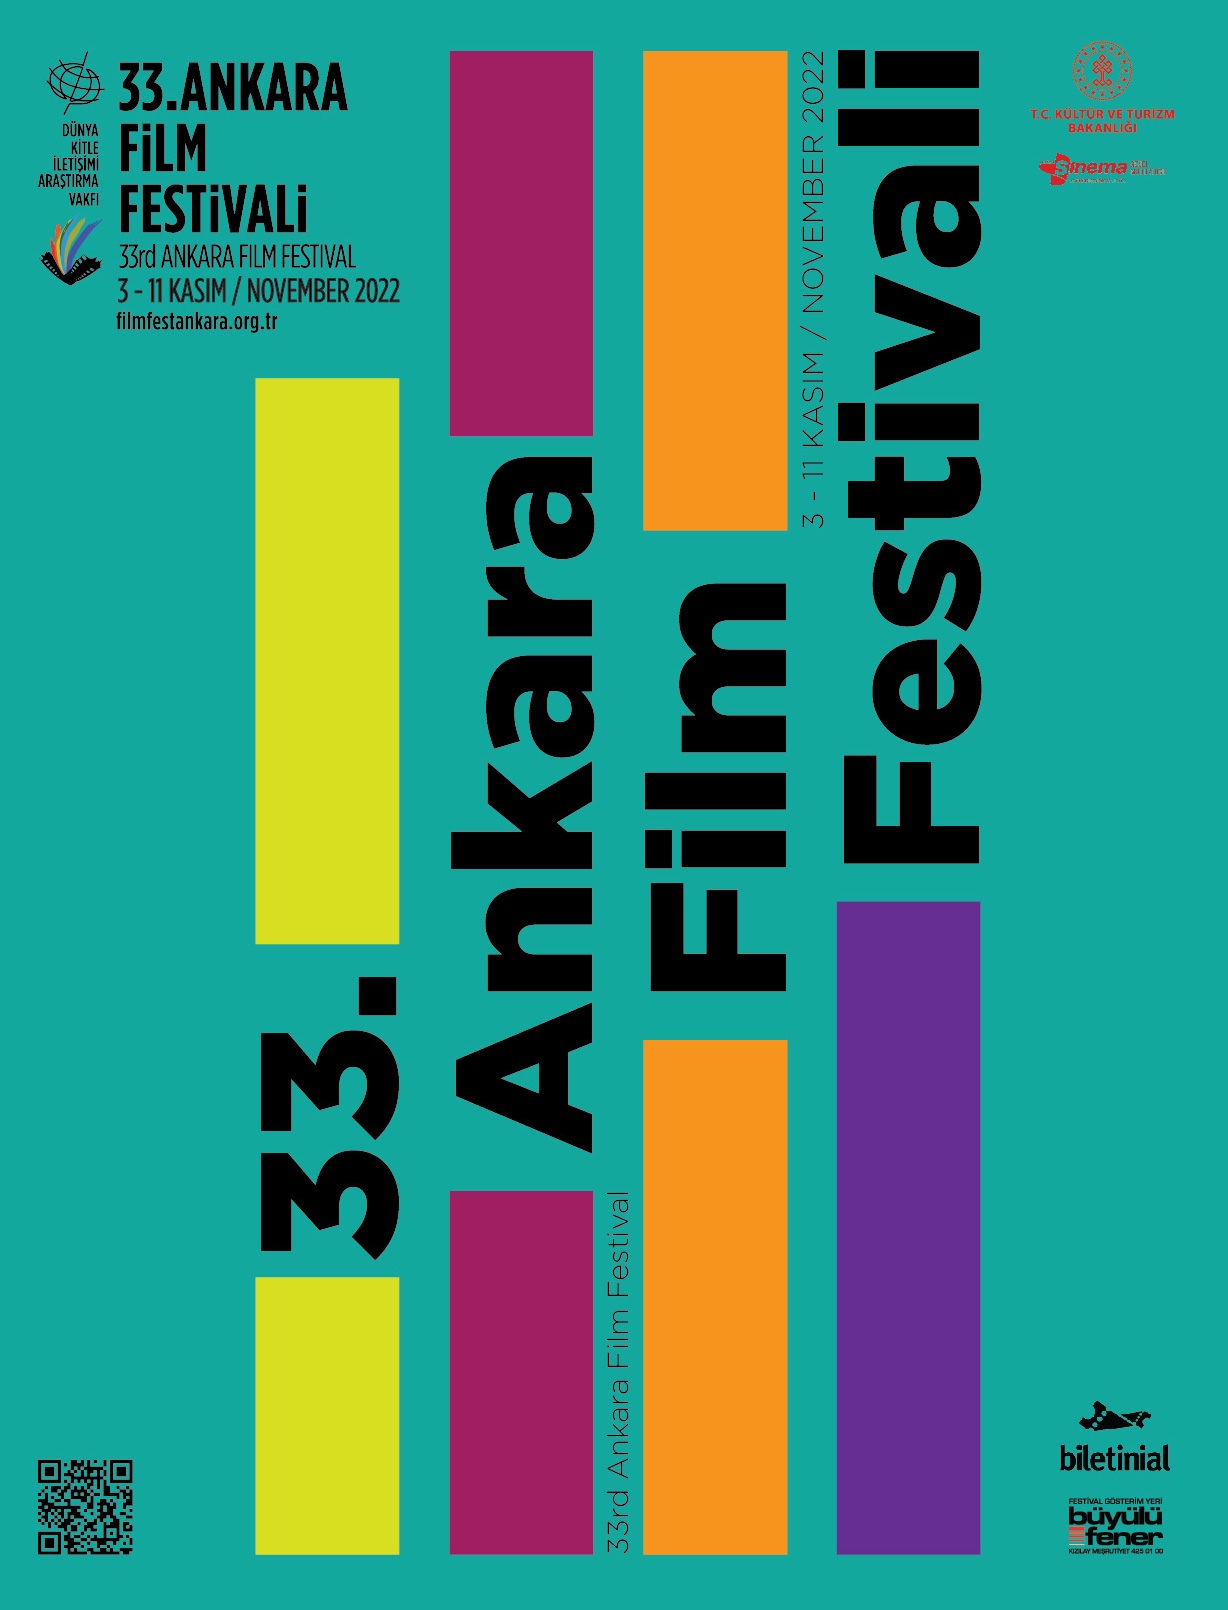 33. Ankara Film Festivali Ödül Töreni Bu Akşam Düzenlenecek!